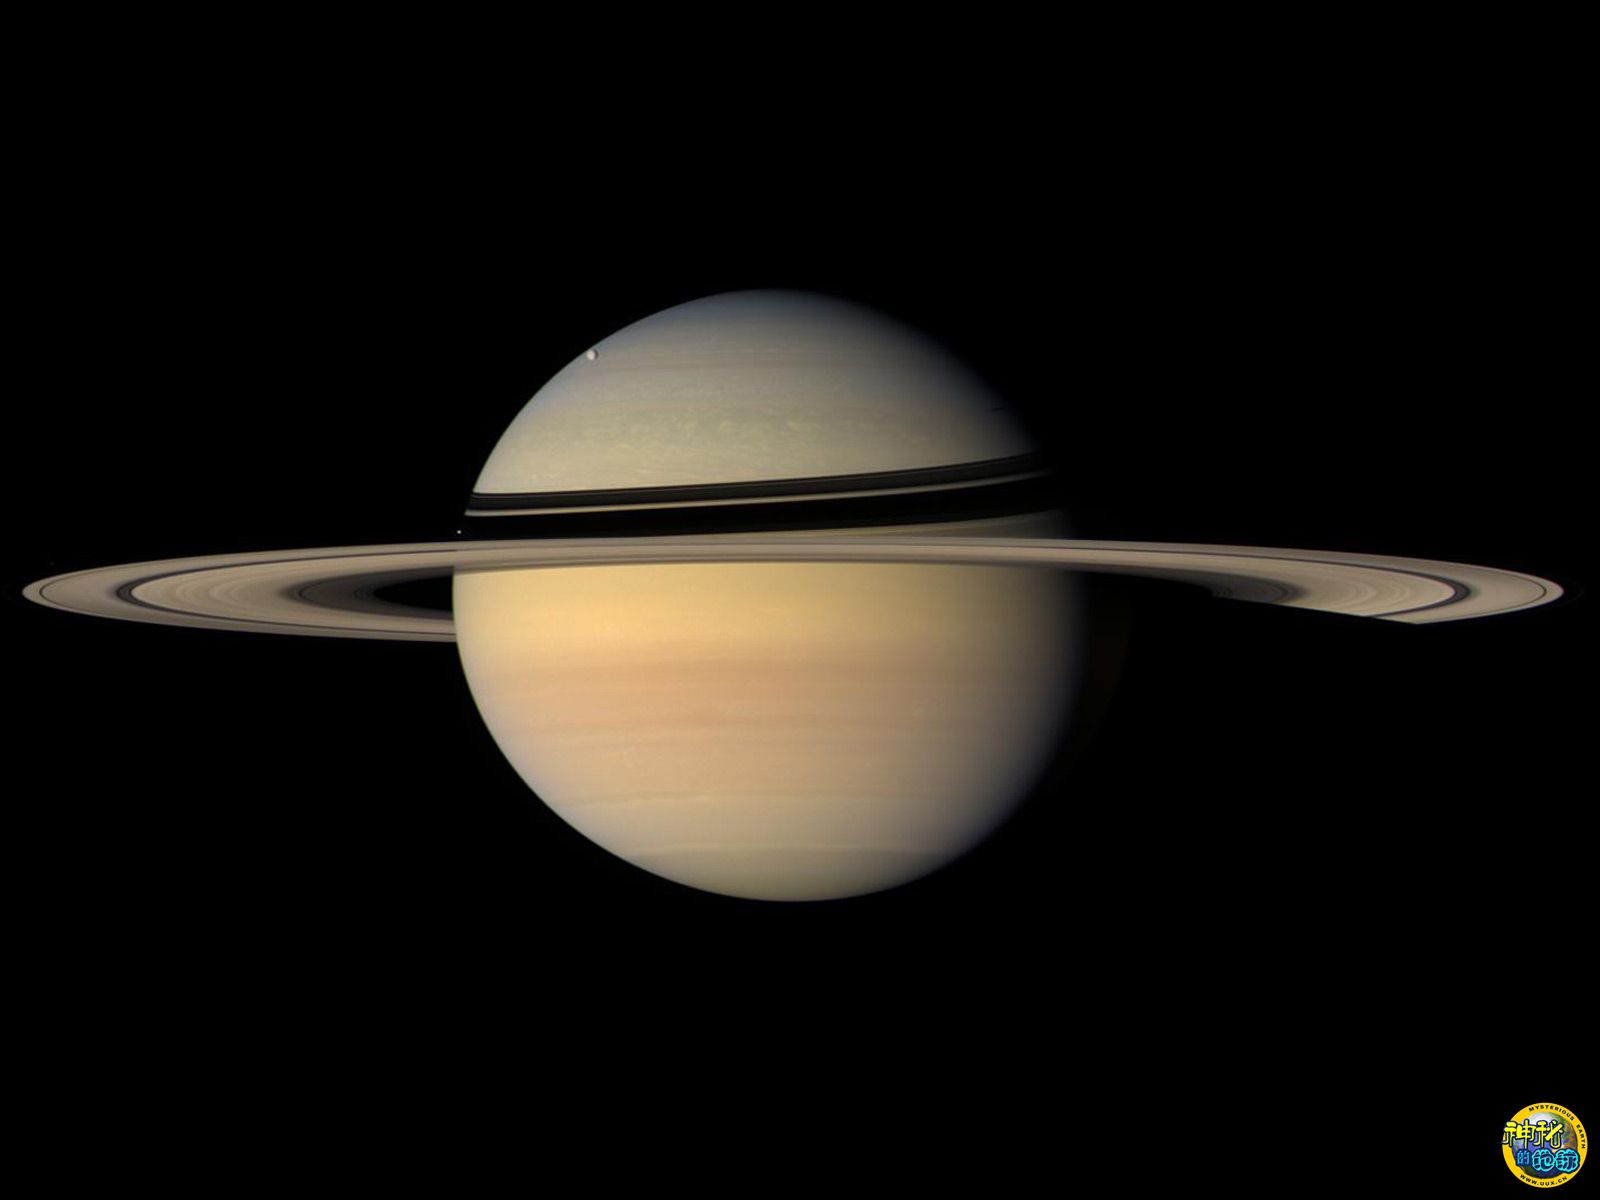 土星和它的卫星